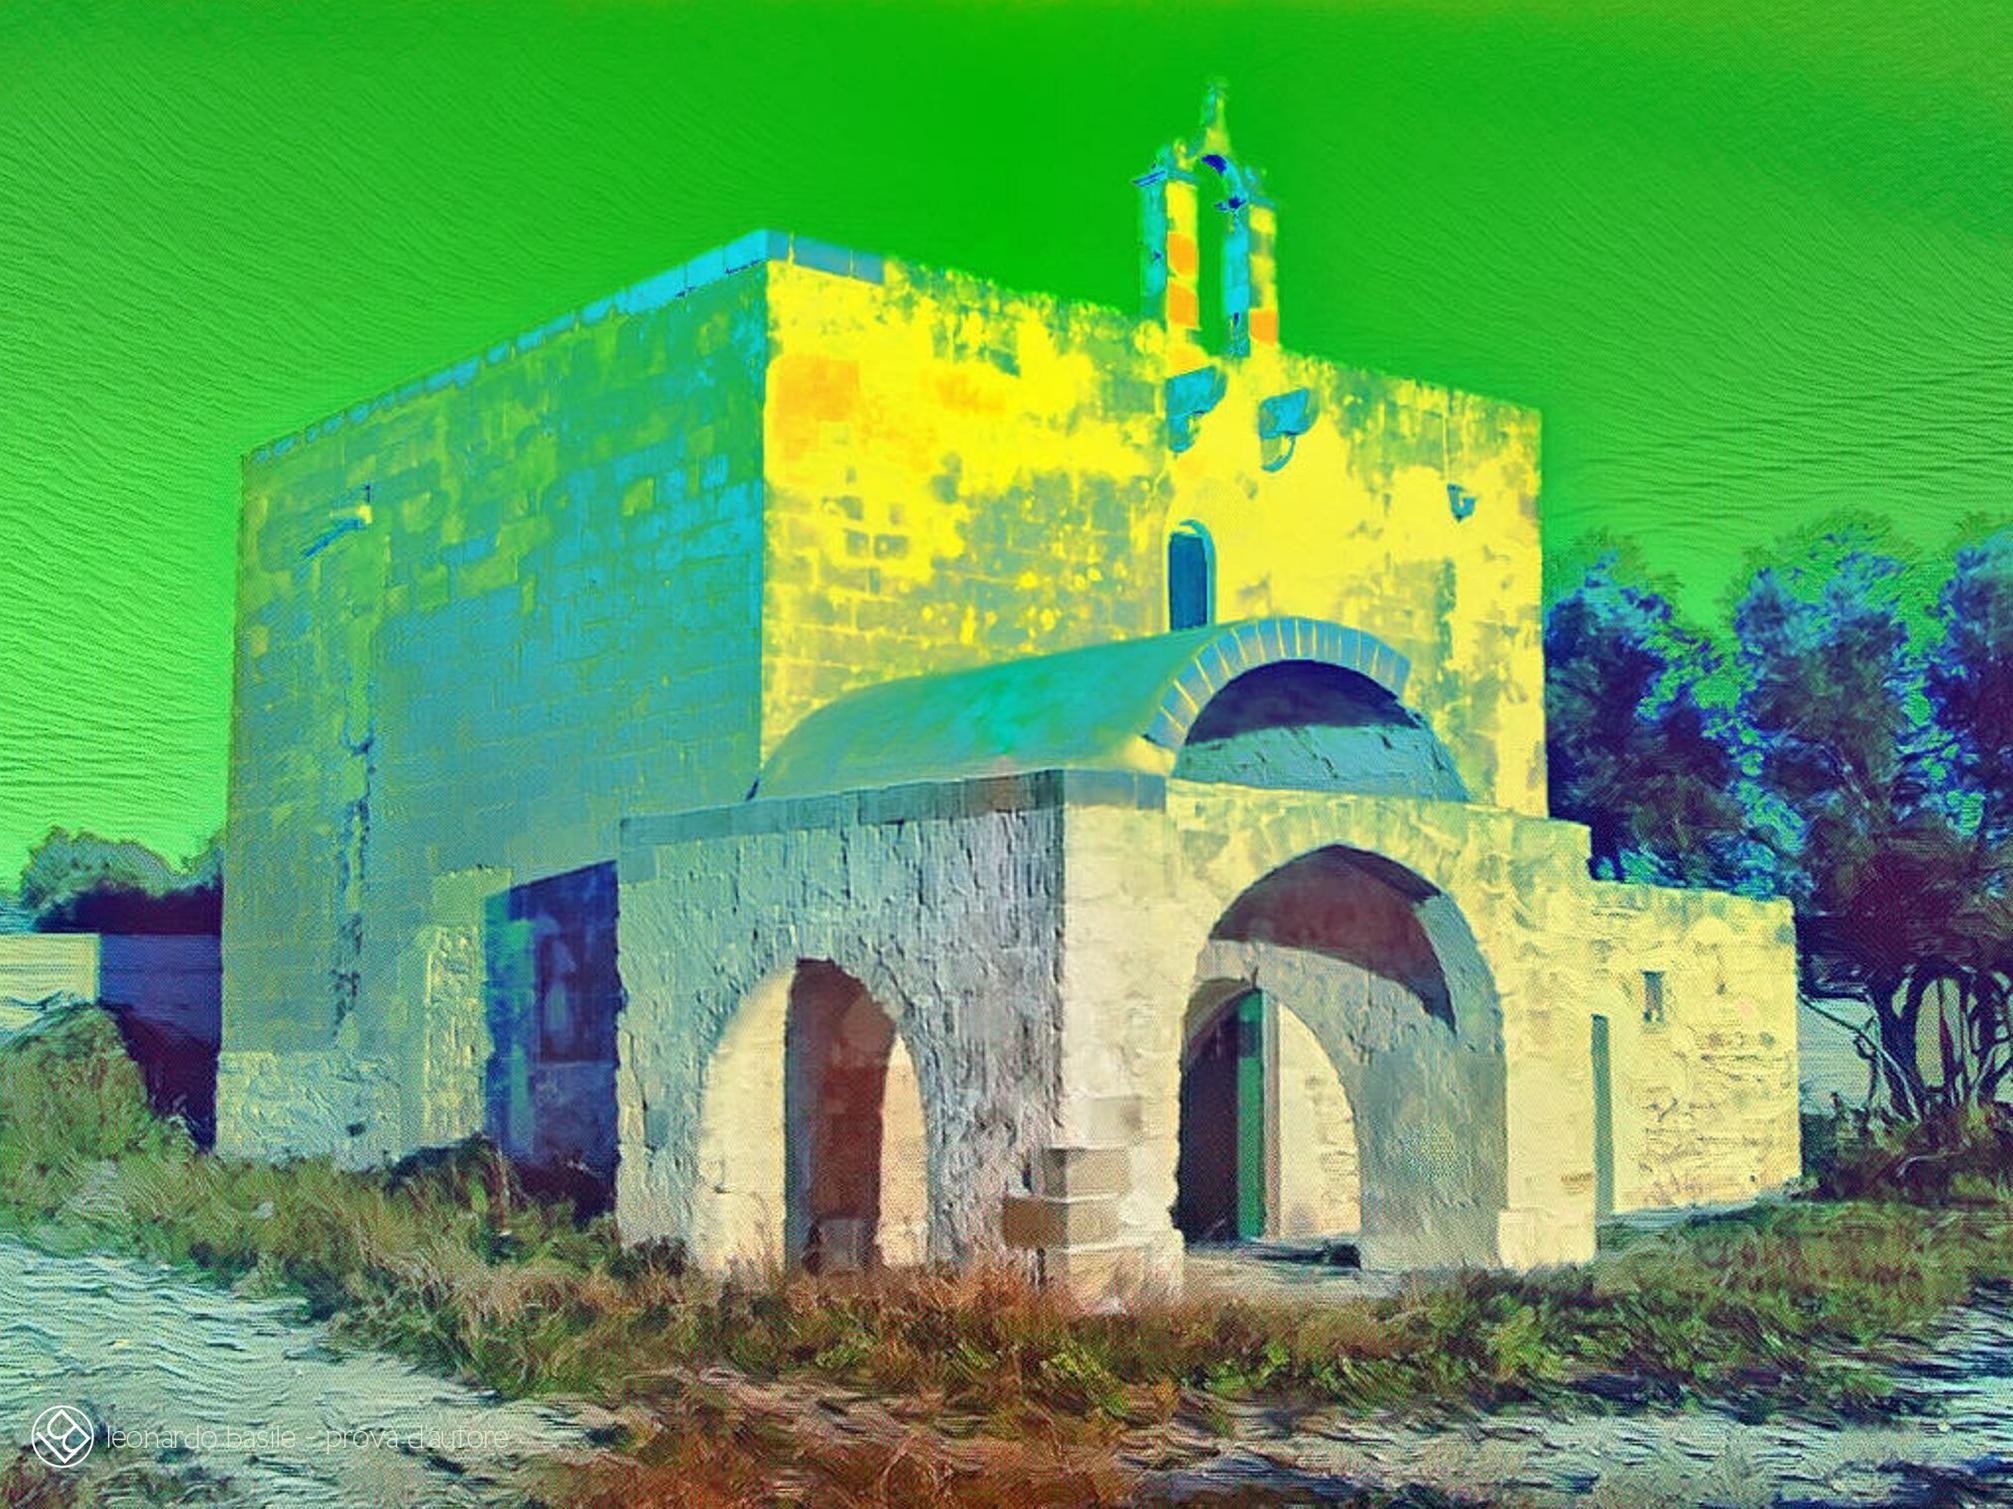 Elaborazione grafica da una fotografia della Chiesa medievale dell'Annunziata di Bari/S.Spirito- 3